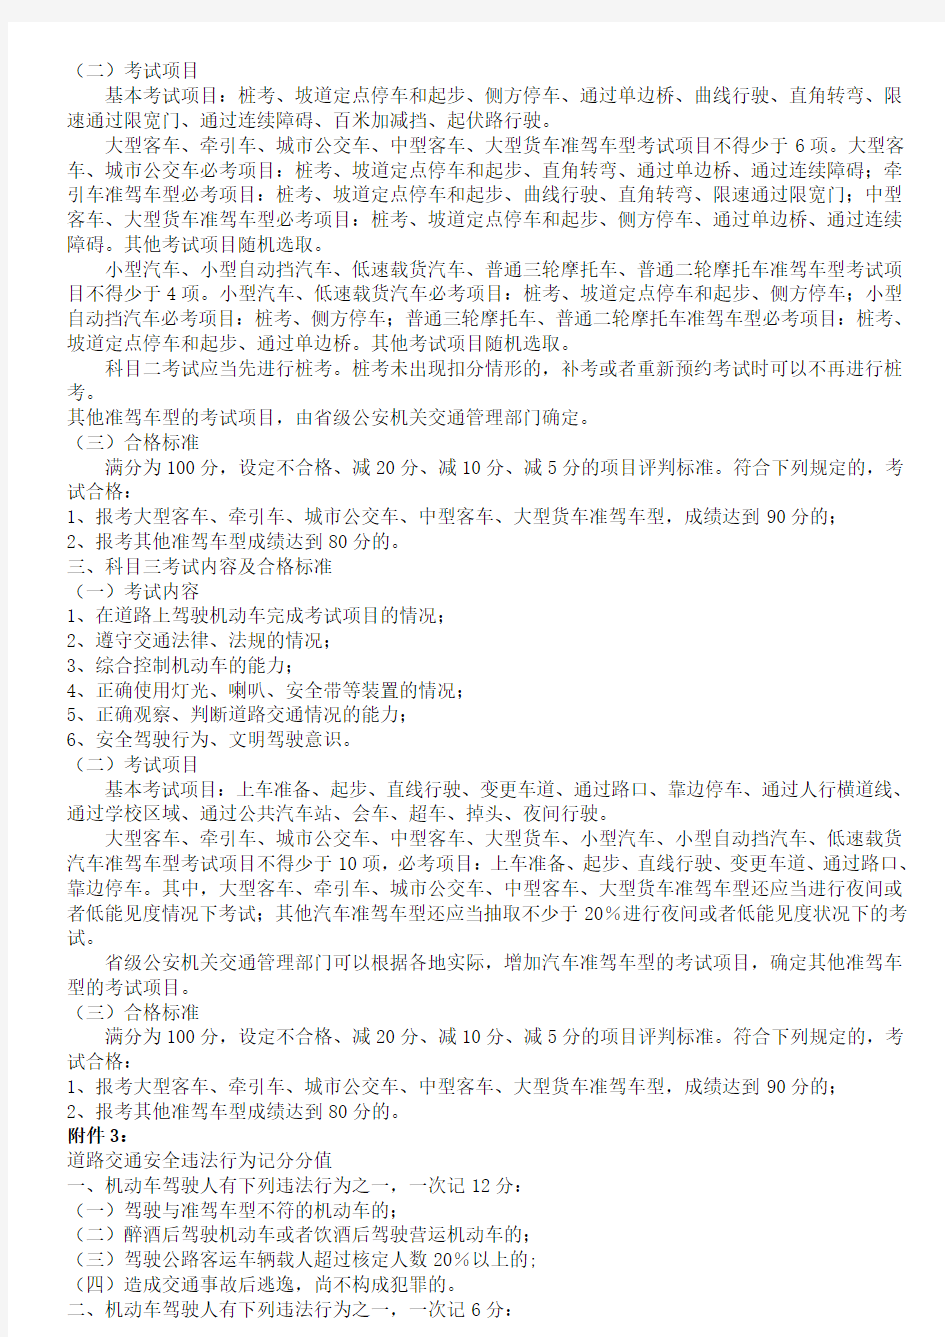 《中华人民共和国机动车驾驶证申领和使用规定》